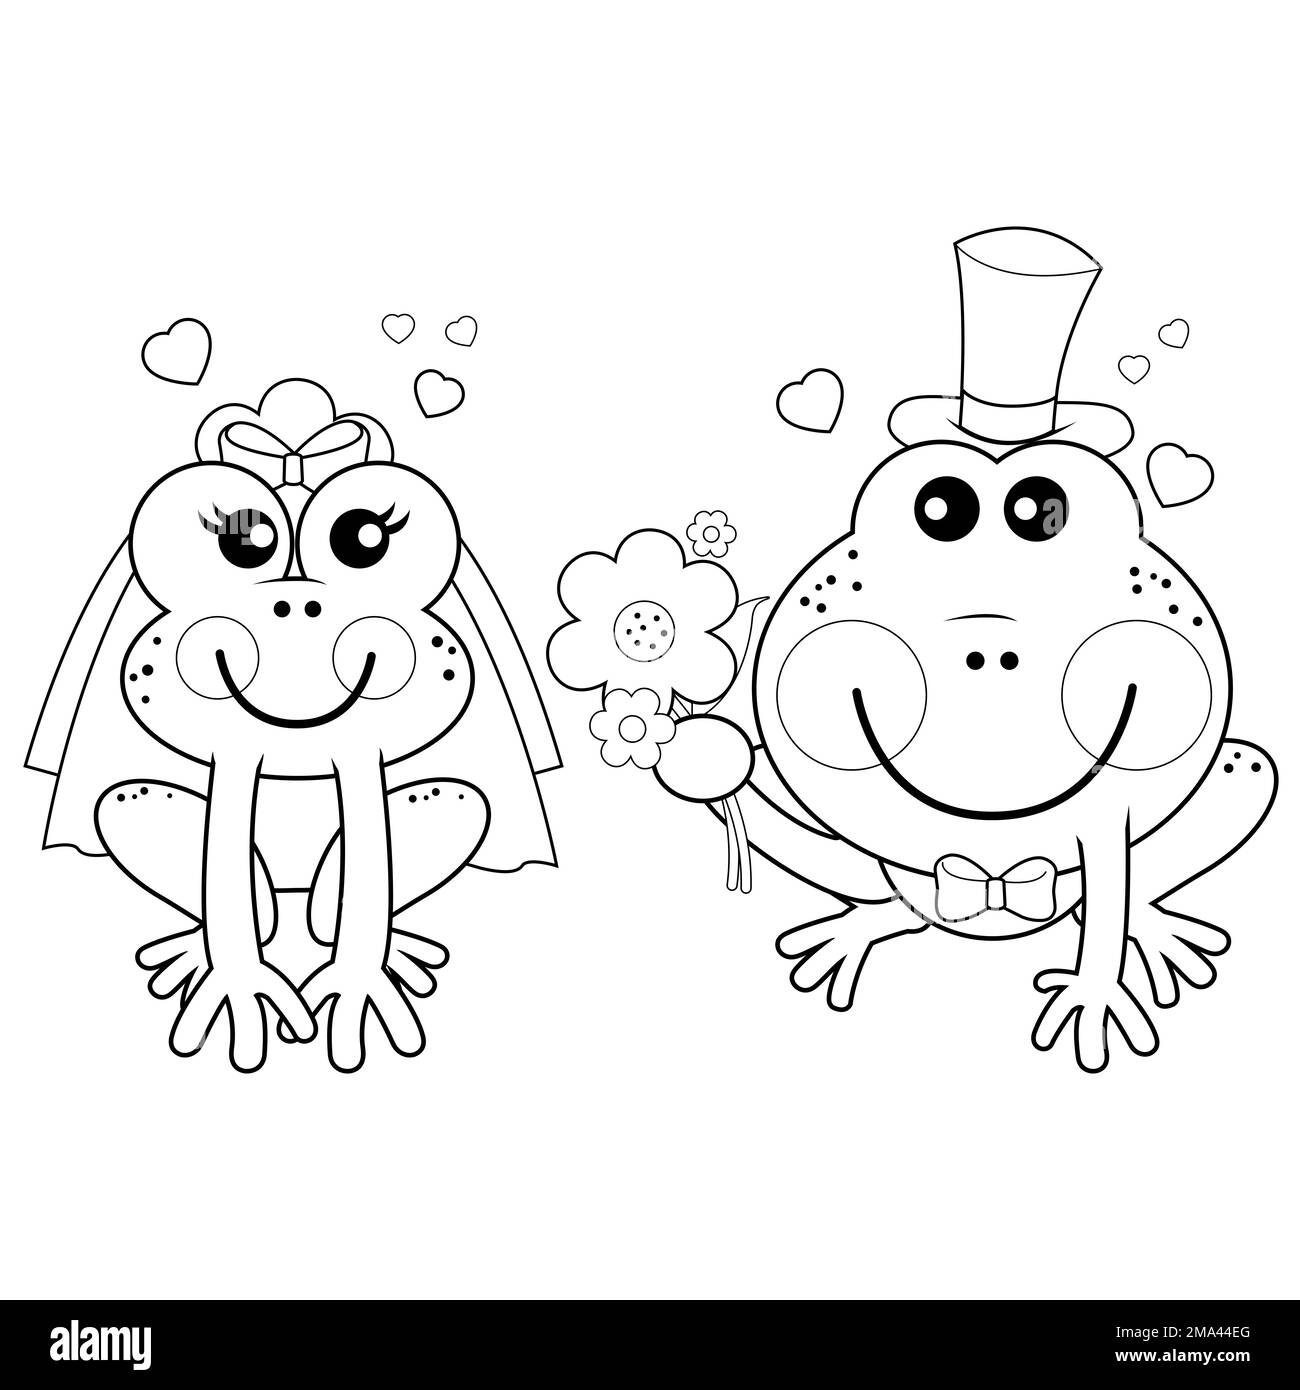 Bande dessinée mariée et marié grenouilles. Mariage de grenouilles. Page de couleur noir et blanc Banque D'Images